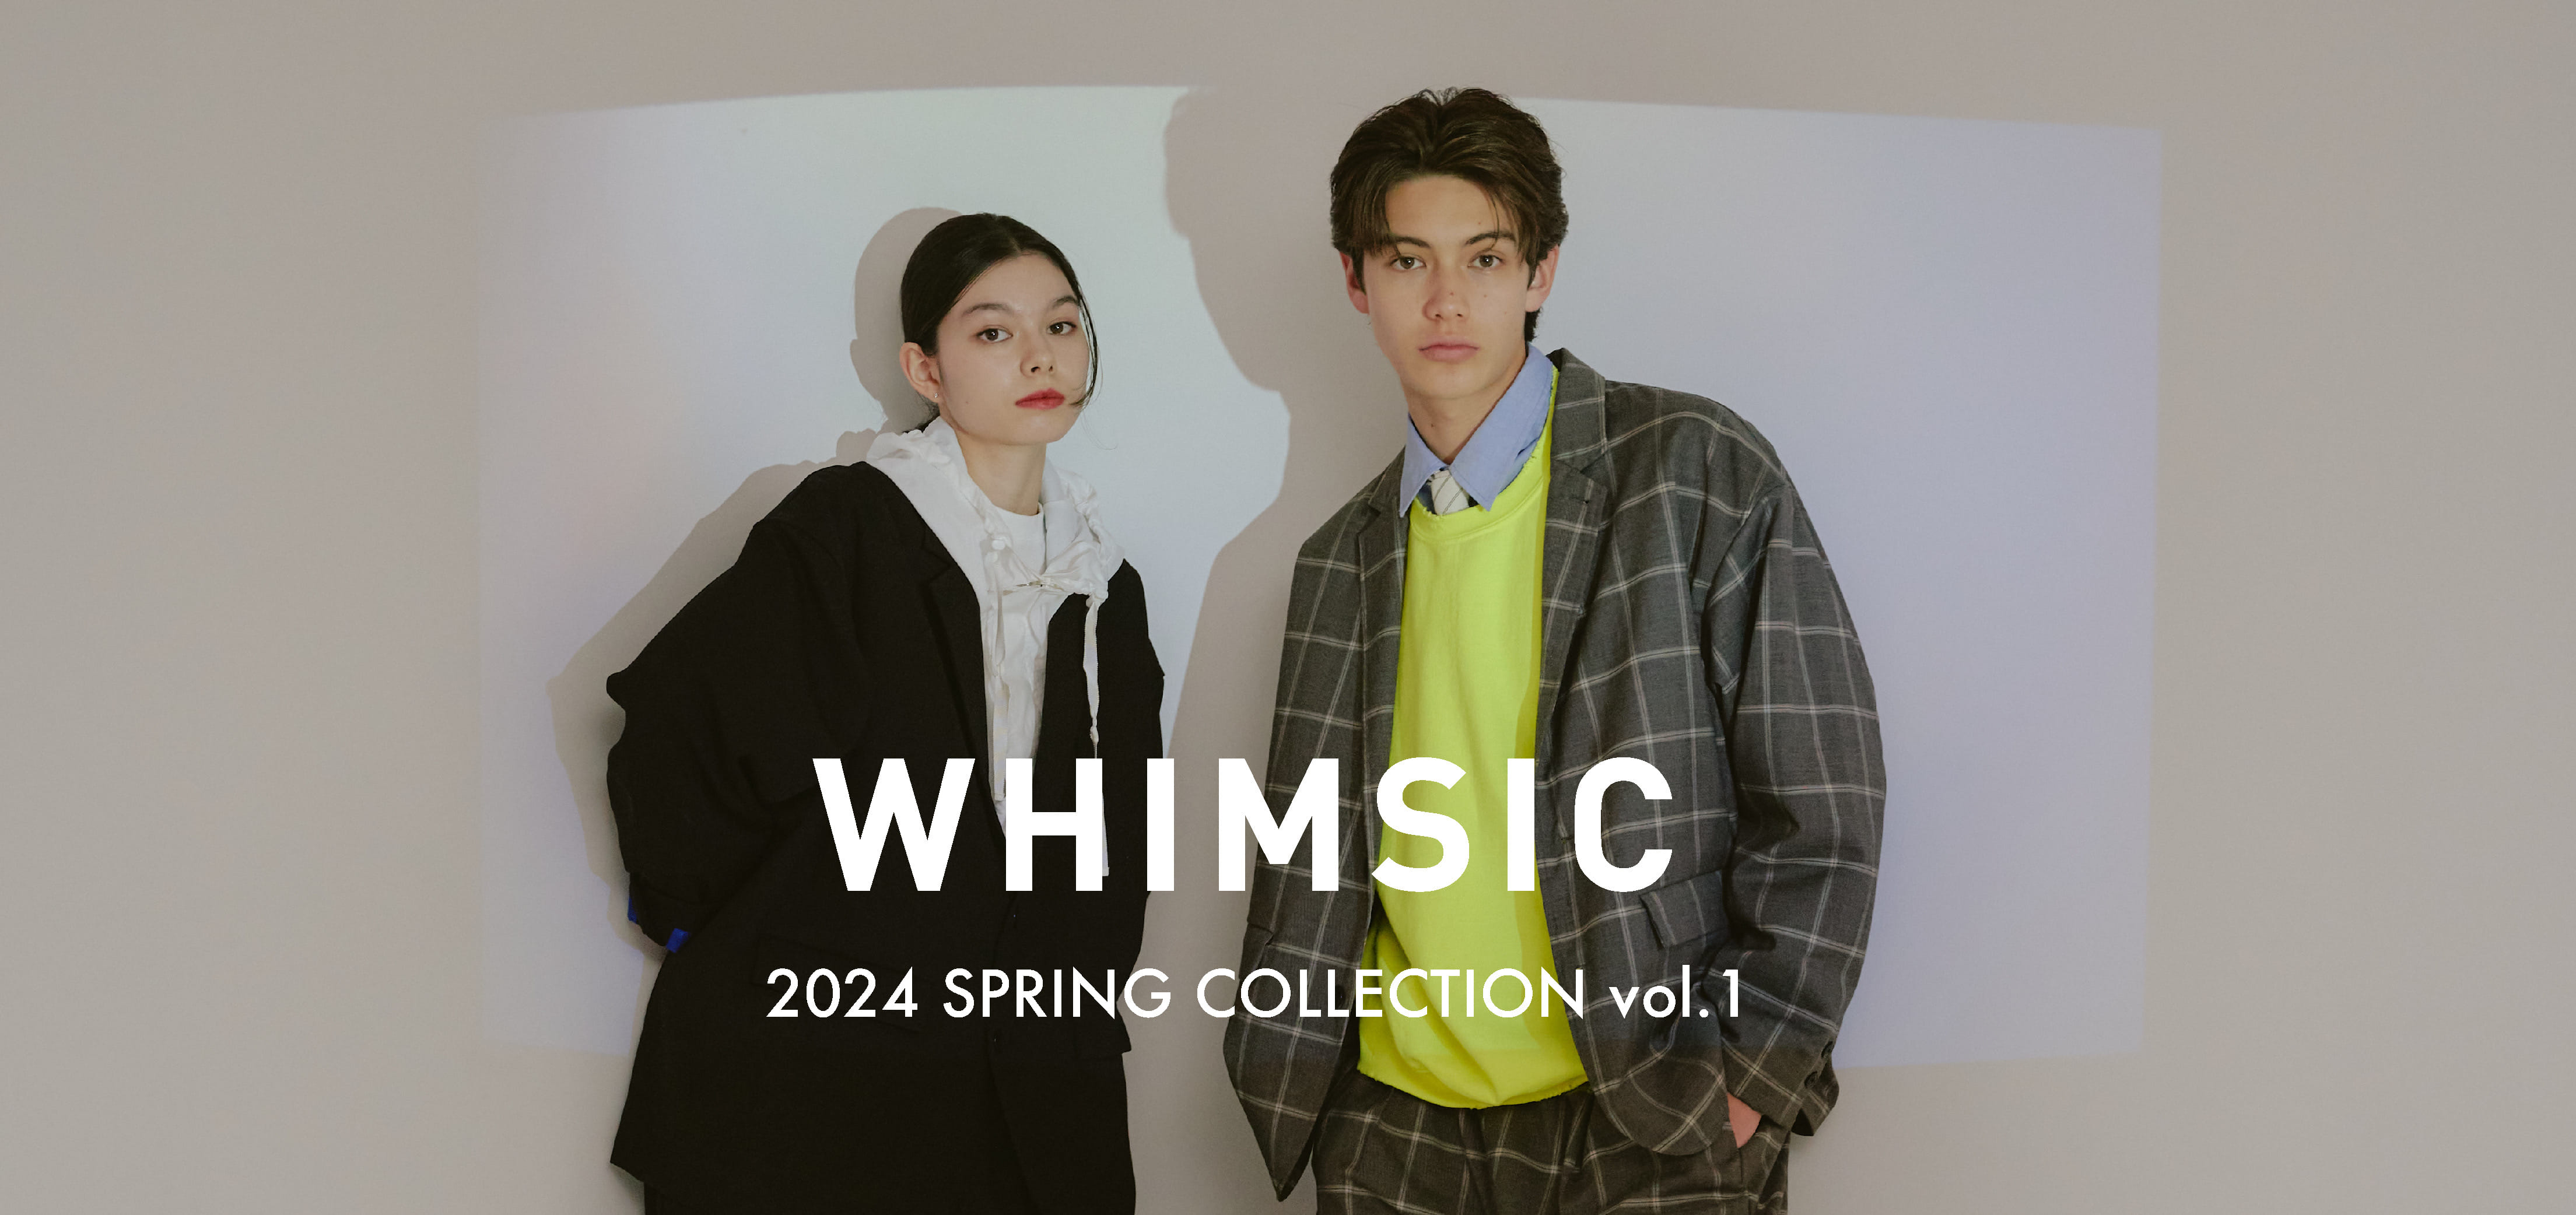 【2/3(土)12:00発売】WHIMSIC SPRING COLLECTION vol.1